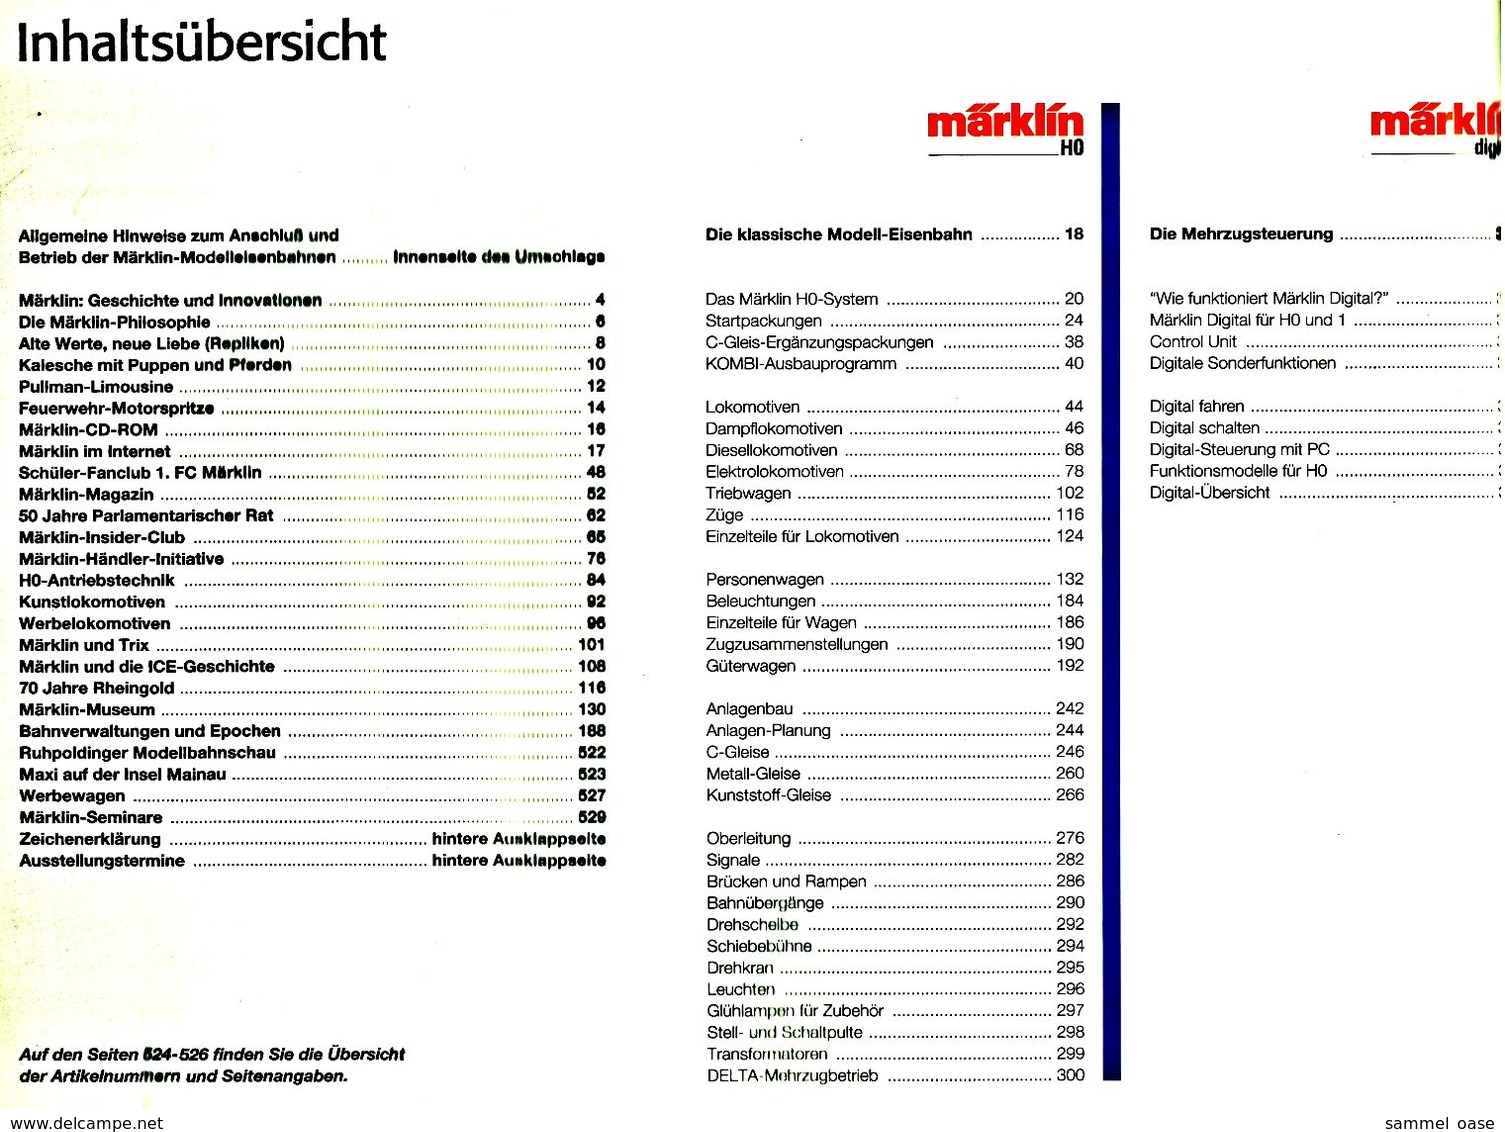 Märklin Katalog Gesammtprogramm 1998/99 DI  -  528 Seiten - Deutsch